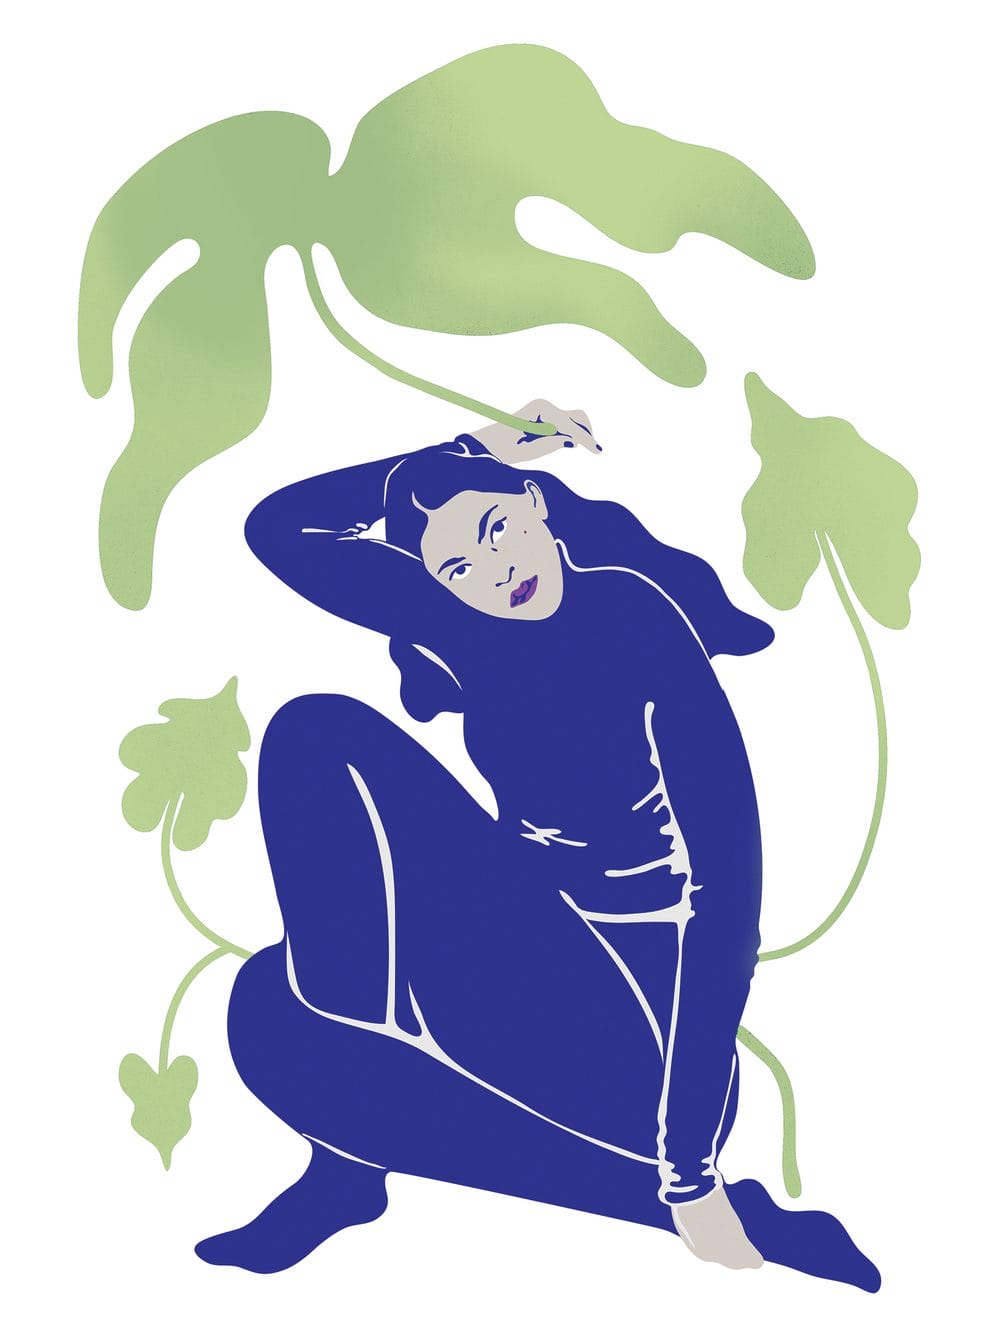 Astrid Linnéa Anderson, Personnage féminin et une plante à l'arrière plan. Elle est de couleur bleu et reprend l'esthétique de Matisse. 